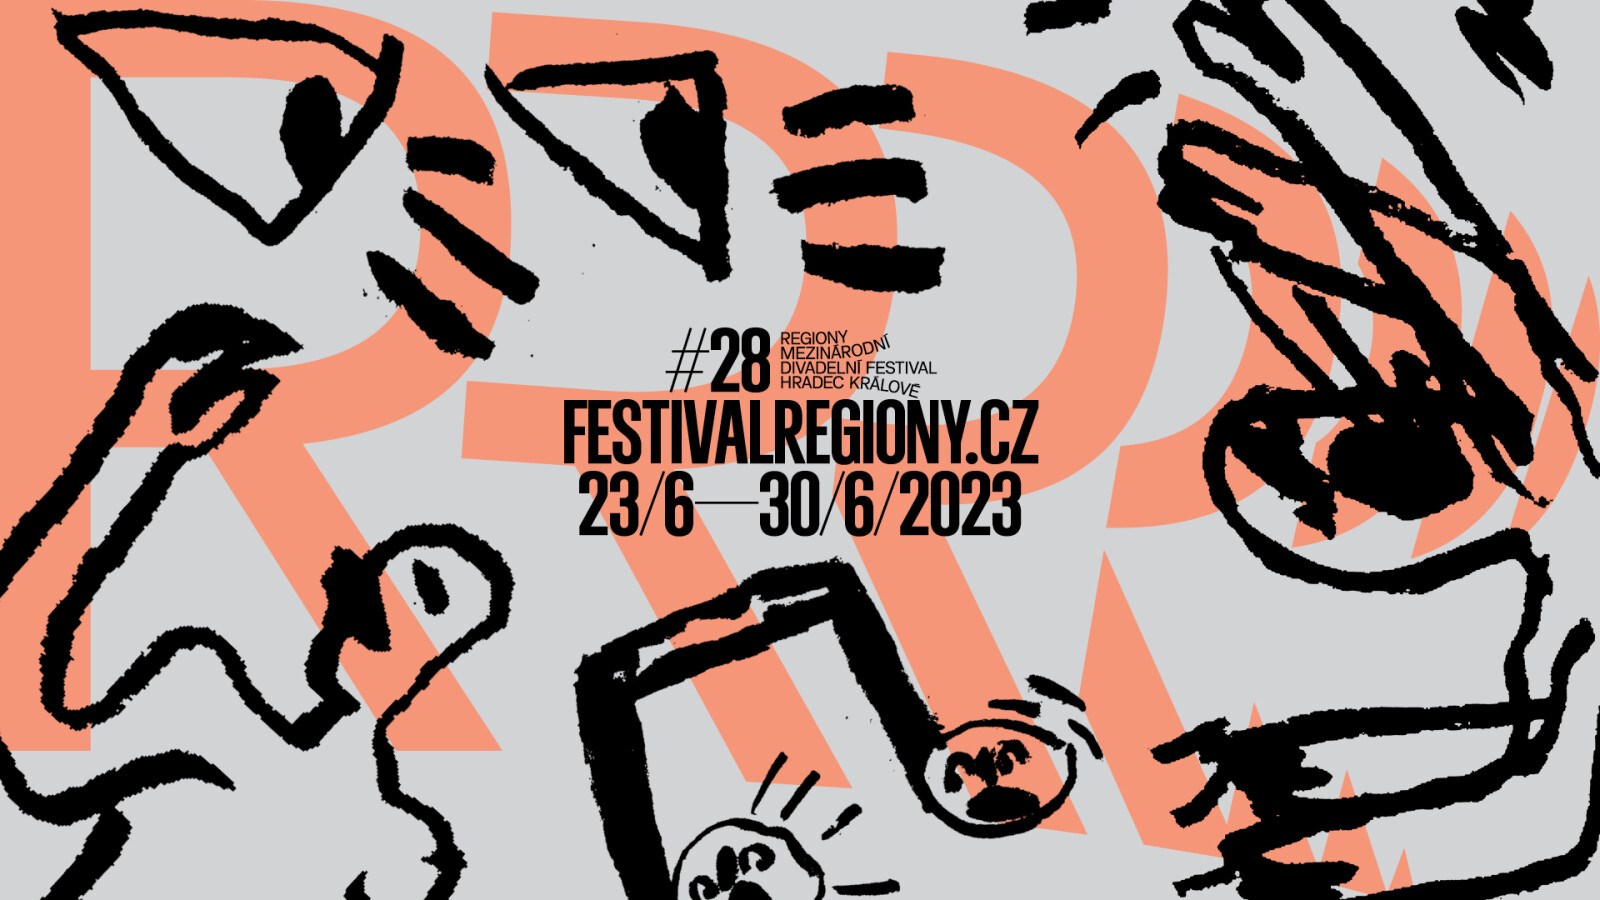 Festival Regiony bude v tomto roce ve znamení RITUÁLU